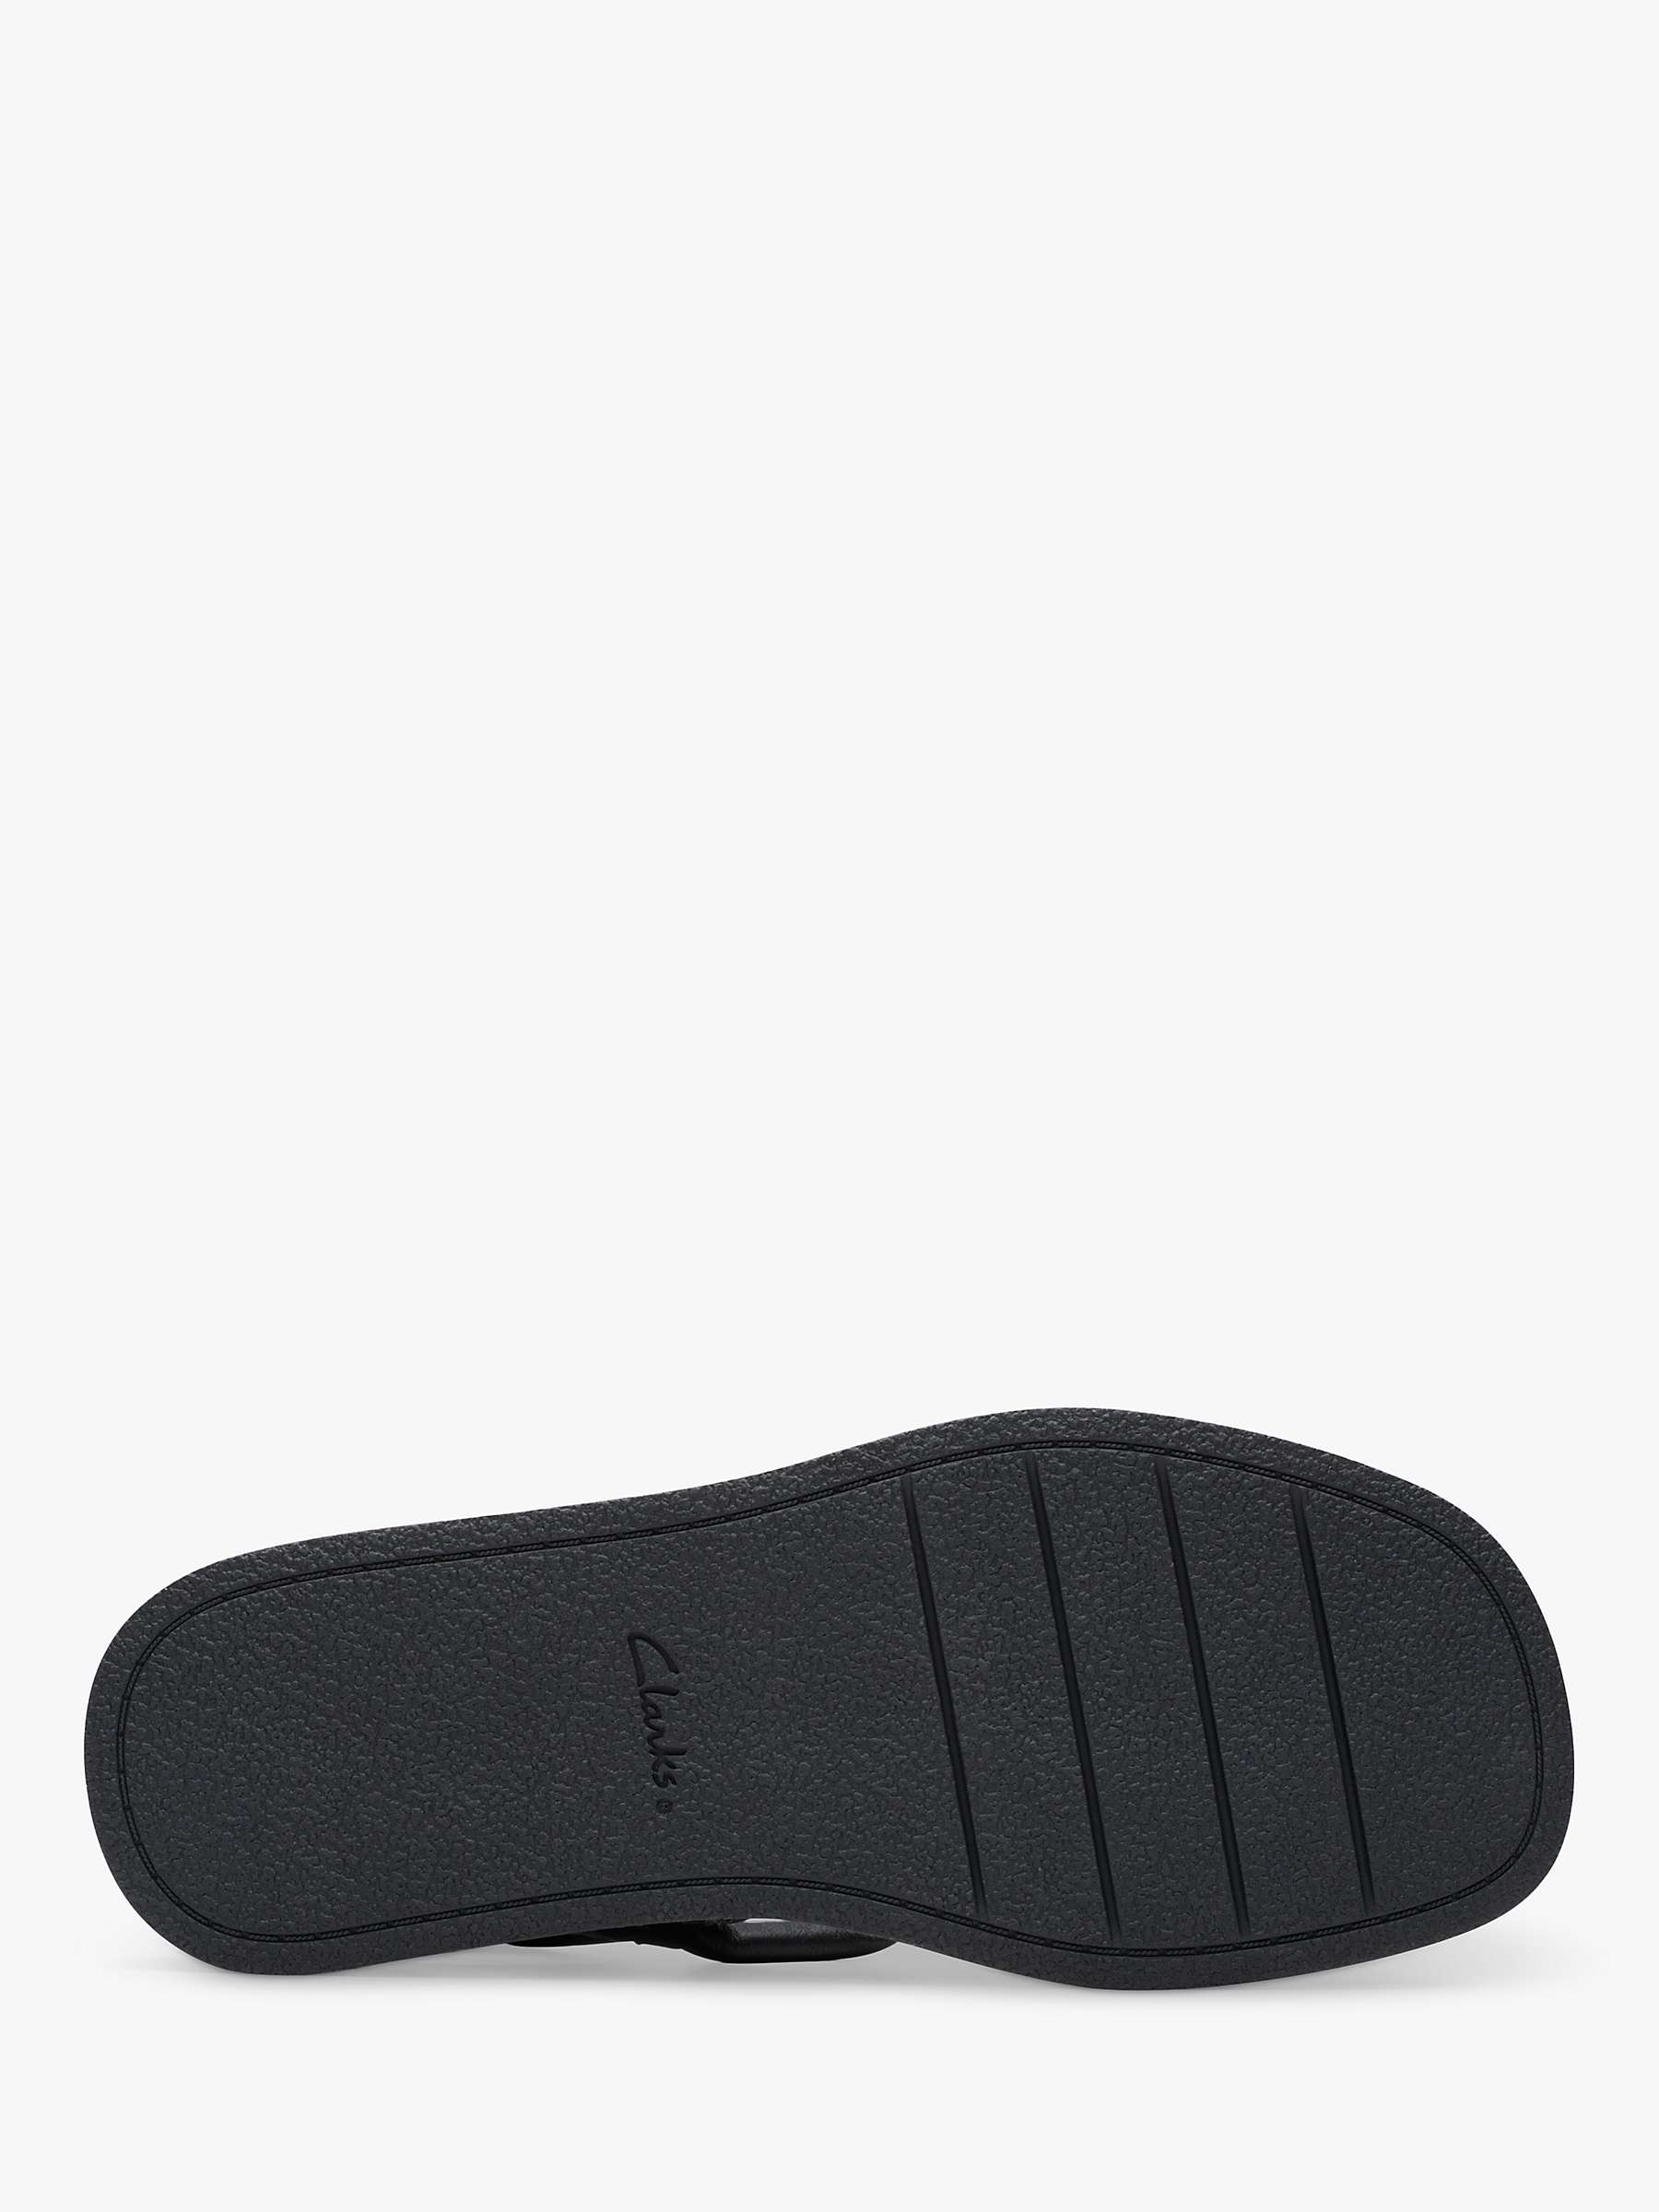 Buy Clarks Alda Cross Leather Flatform Sandals Online at johnlewis.com